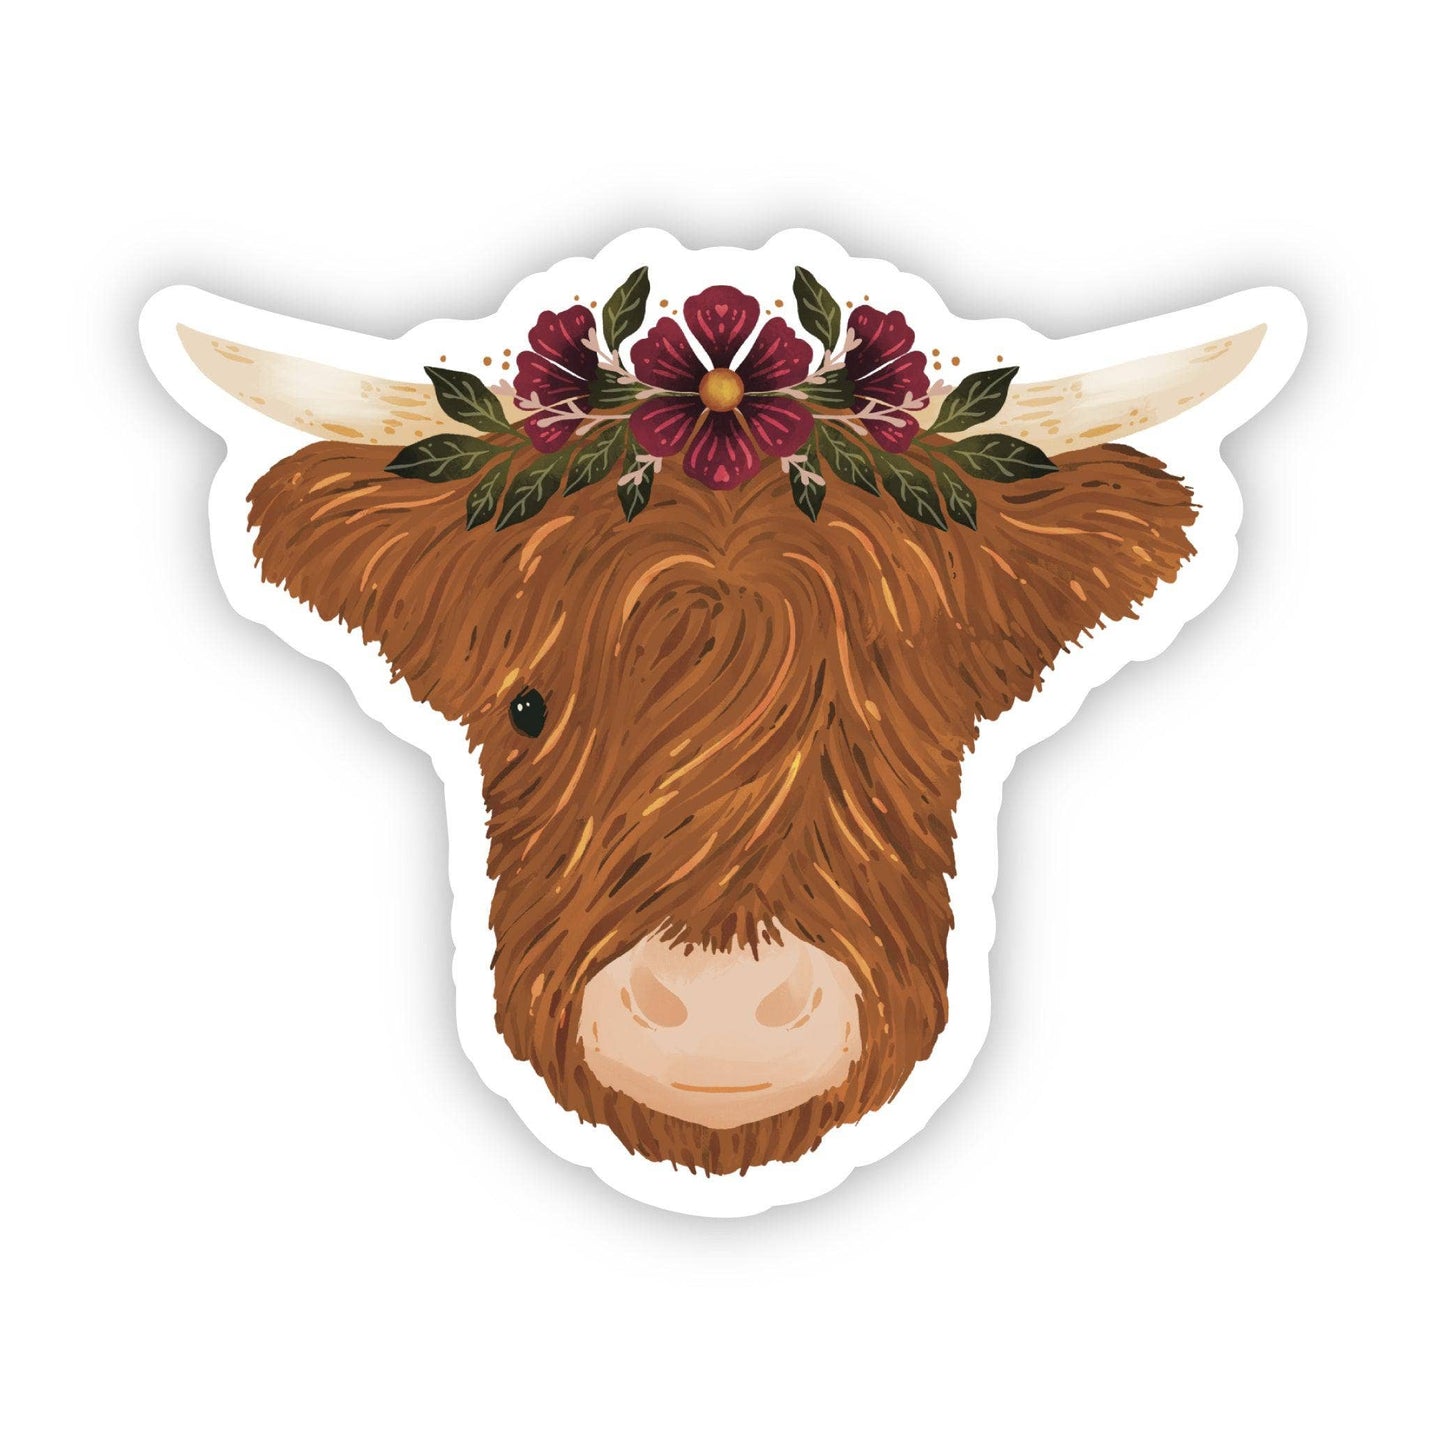 Highland Cow & Flower Crown Sticker.